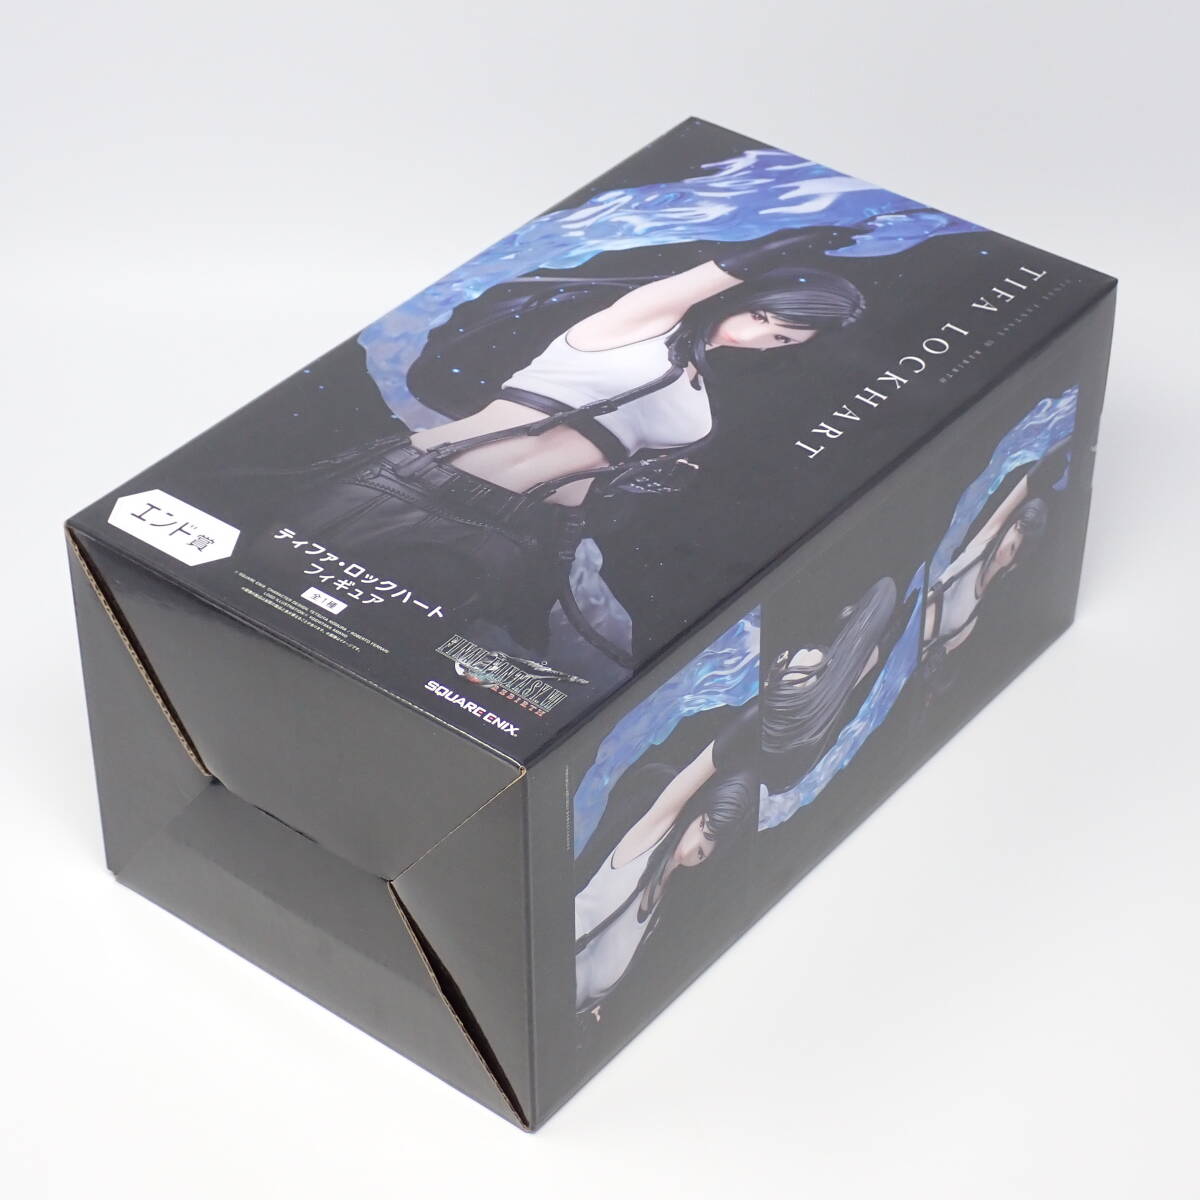  блистер нераспечатанный товар sk одежда * enix end .tifa* блокировка Heart Final Fantasy VII Rebirth продажа память жребий 